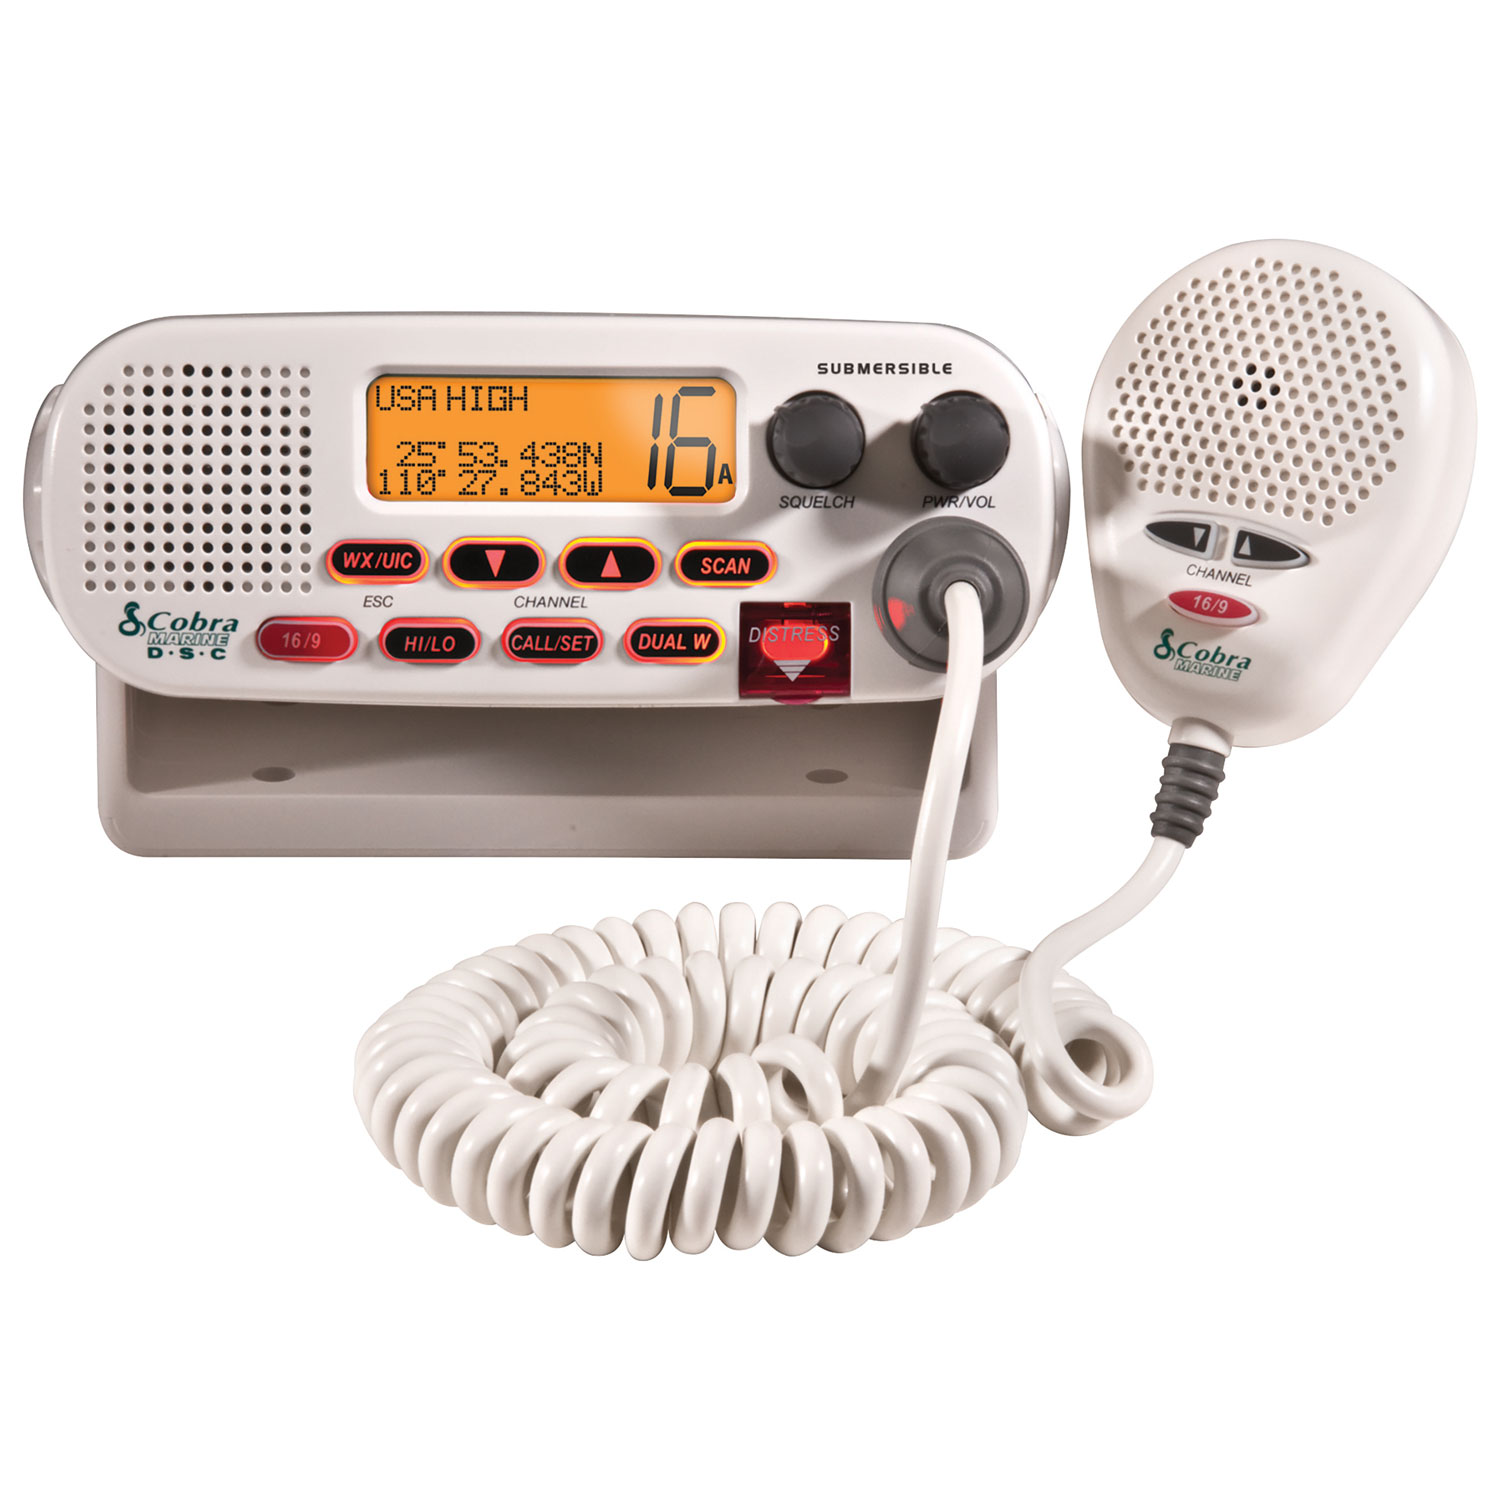 Cobra DSC-Capable VHF Radio (MRF45-D) - White